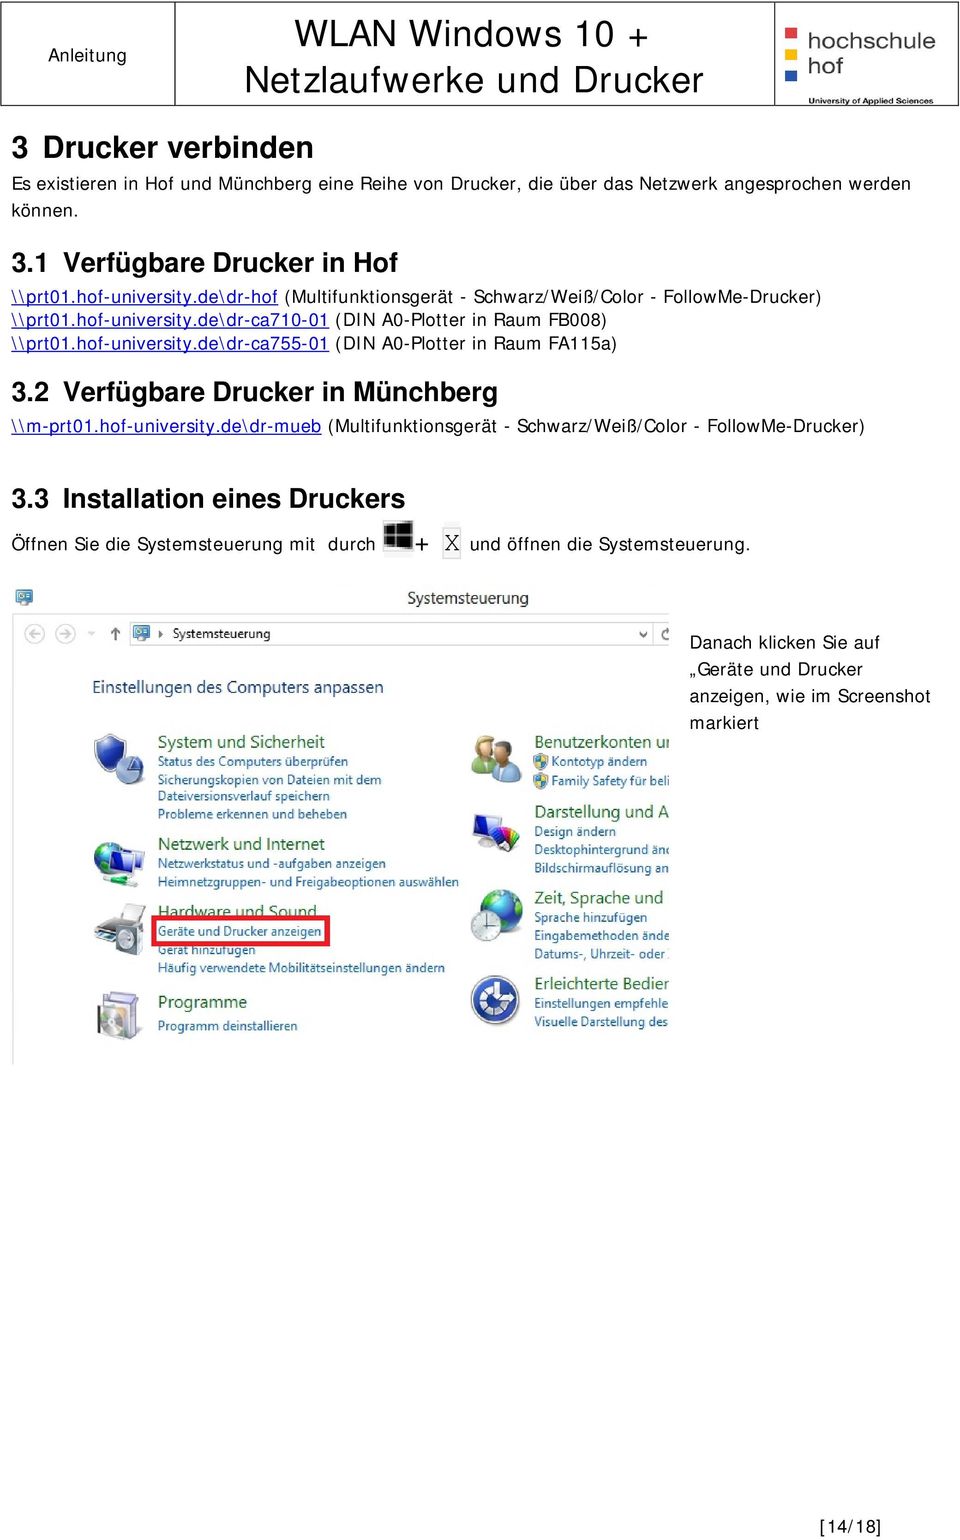 2 Verfügbare Drucker in Münchberg \\m-prt01.hof-university.de\dr-mueb (Multifunktionsgerät - Schwarz/Weiß/Color - FollowMe-Drucker) 3.